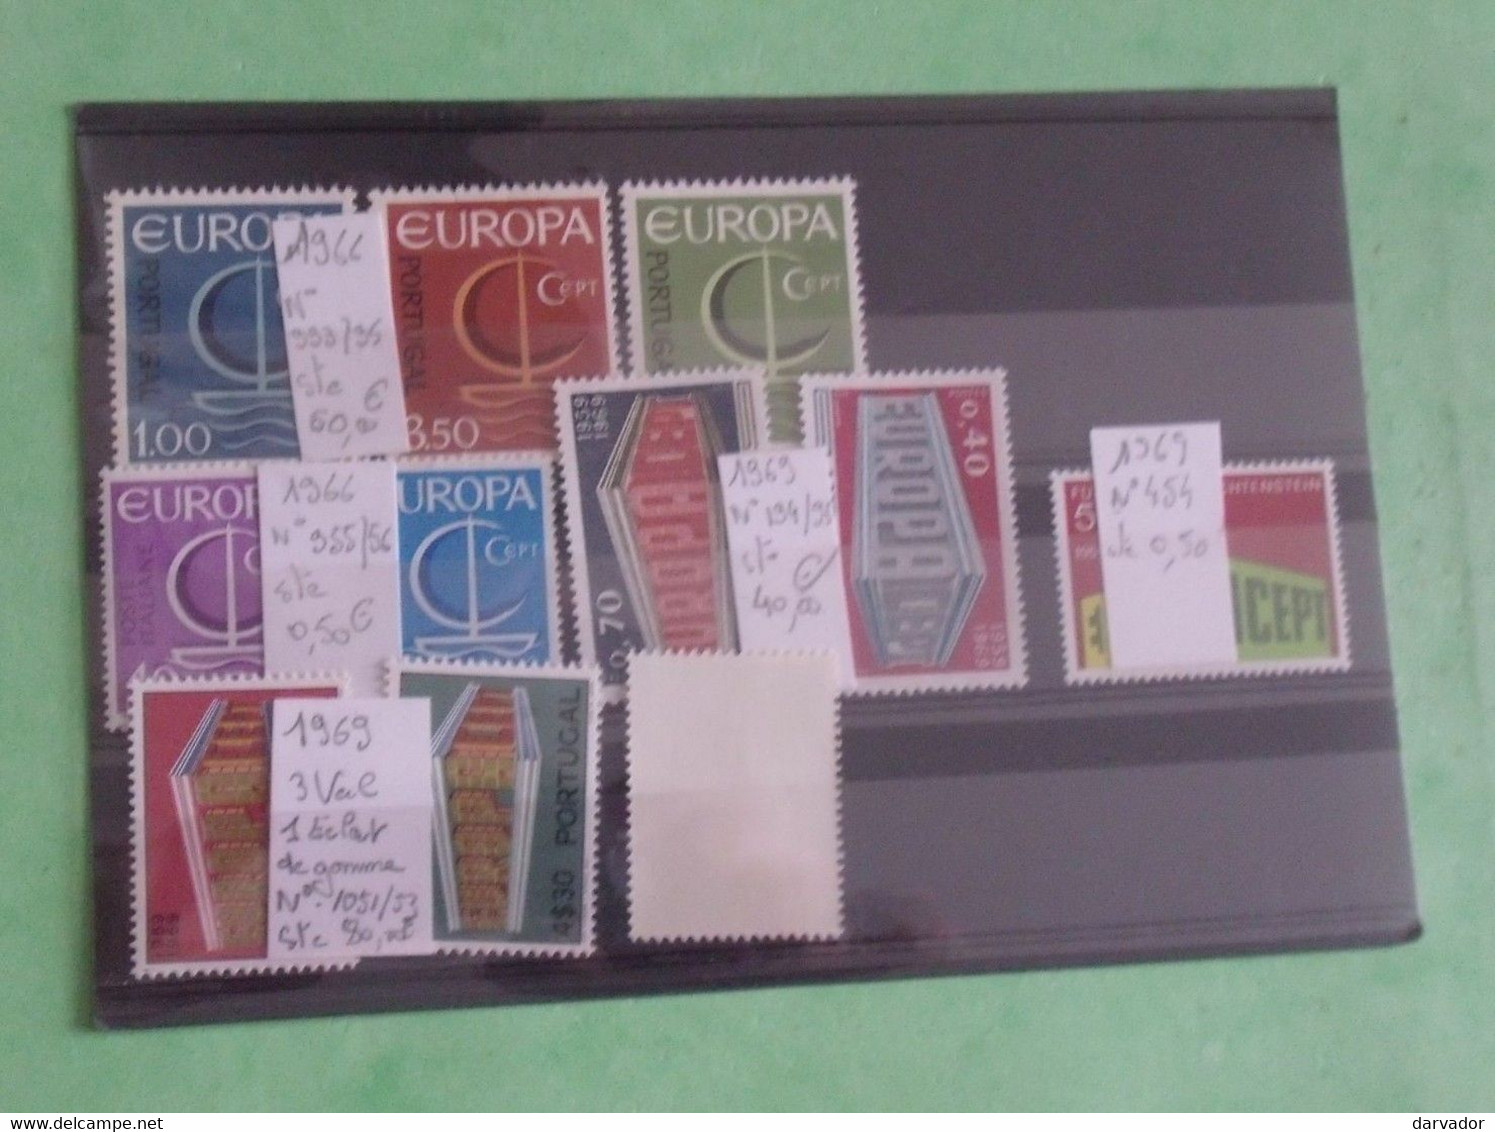 TC20 / Collection , divers timbres et blocs EUROPA sur plaquettes tous neuf ** bonne côte